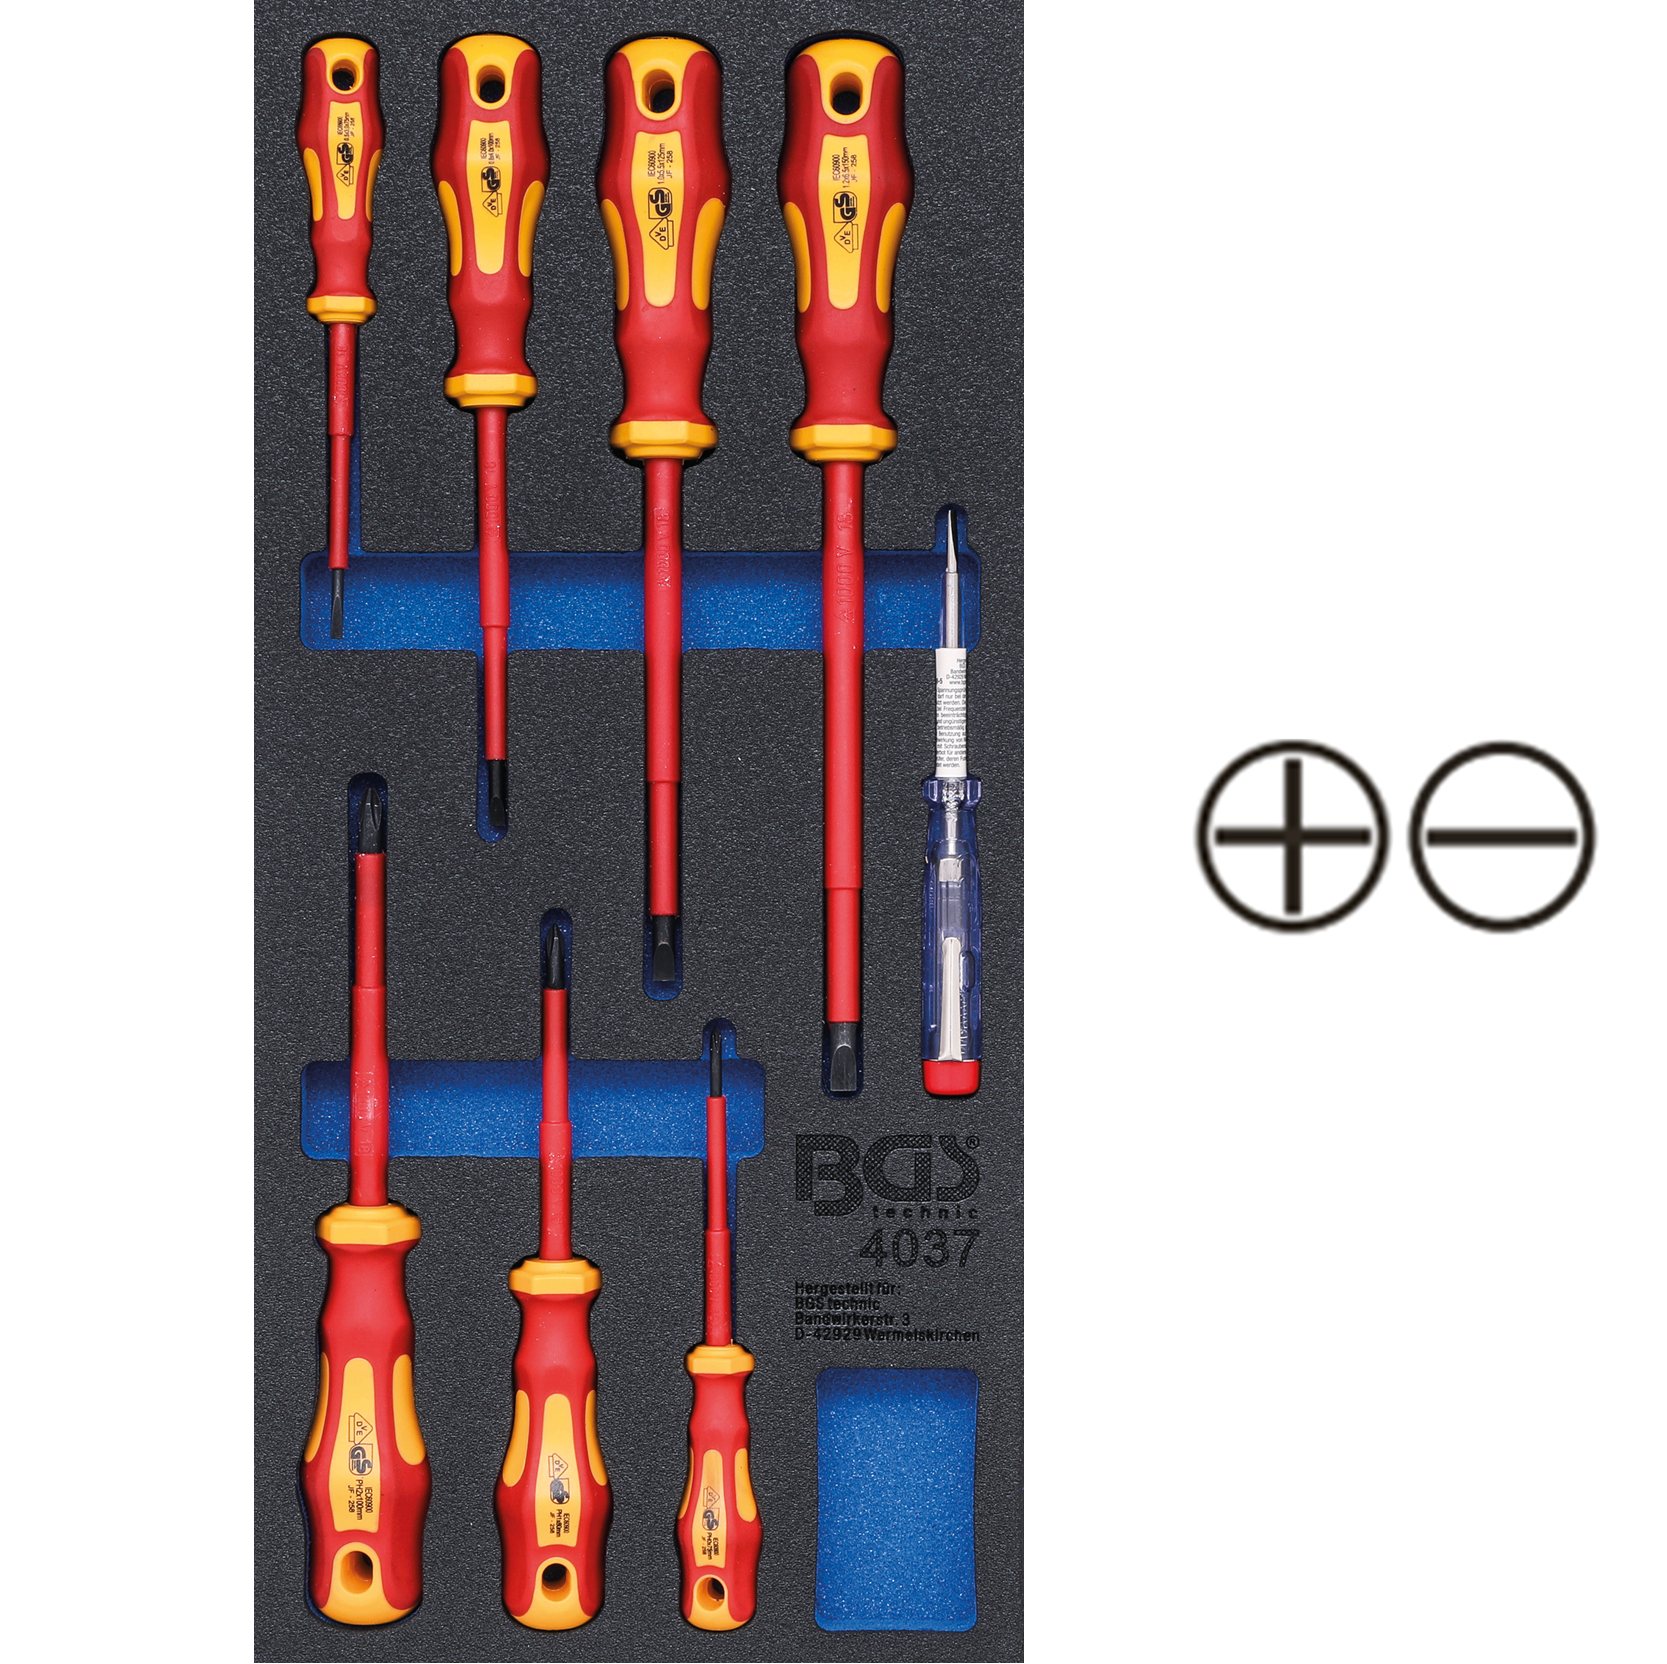 Modul 1/3 - skrutkovače elektrikárske VDE so skúšačkou, ploché SL, PH, 8 dielov, BGS 4037